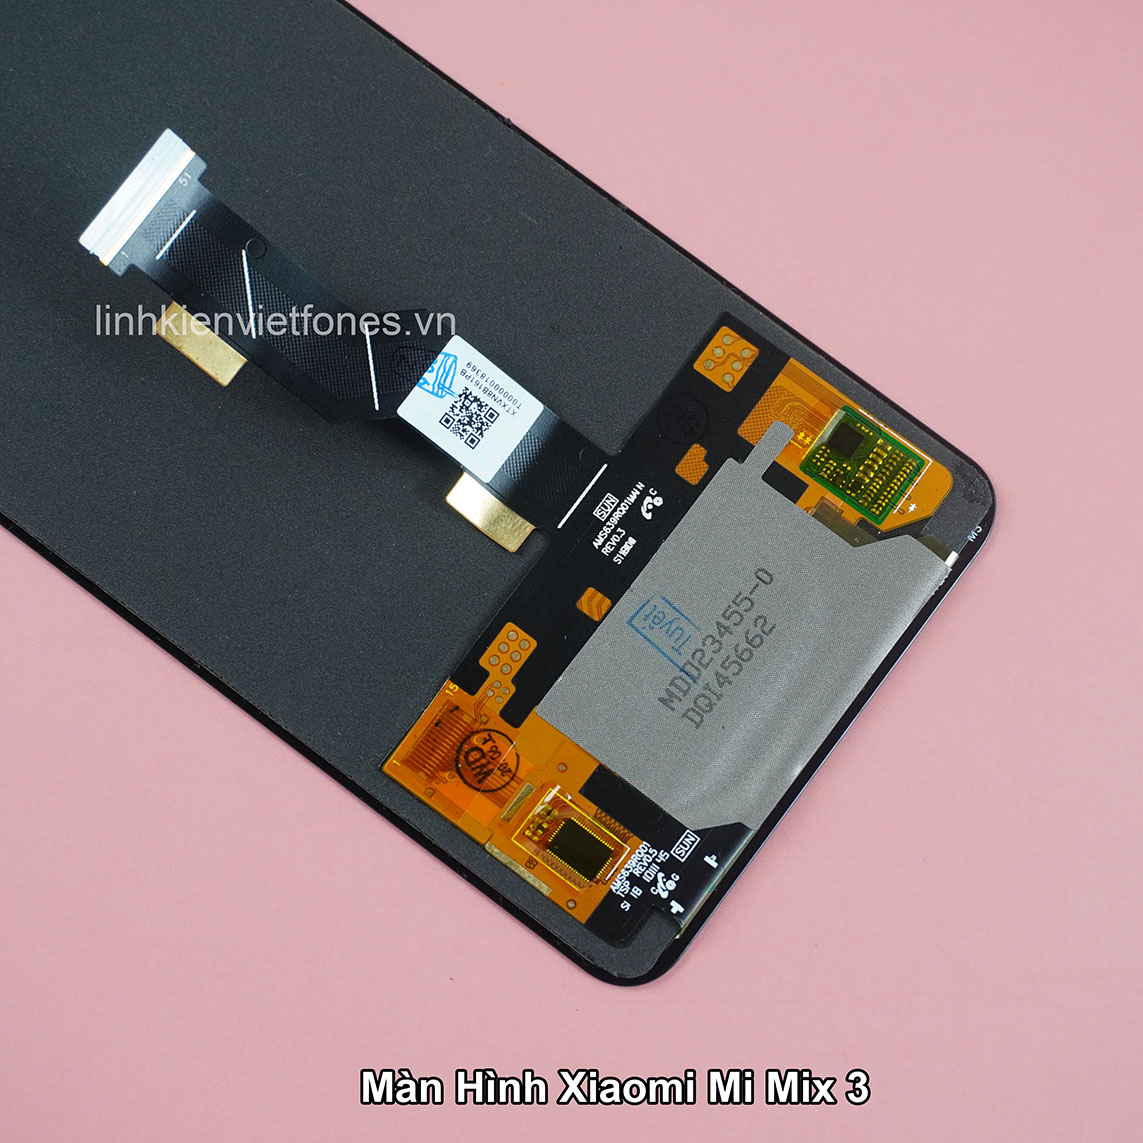 Màn Hình Xiaomi Mi Mix 3 Zin New - Linhkienvietfones.Vn